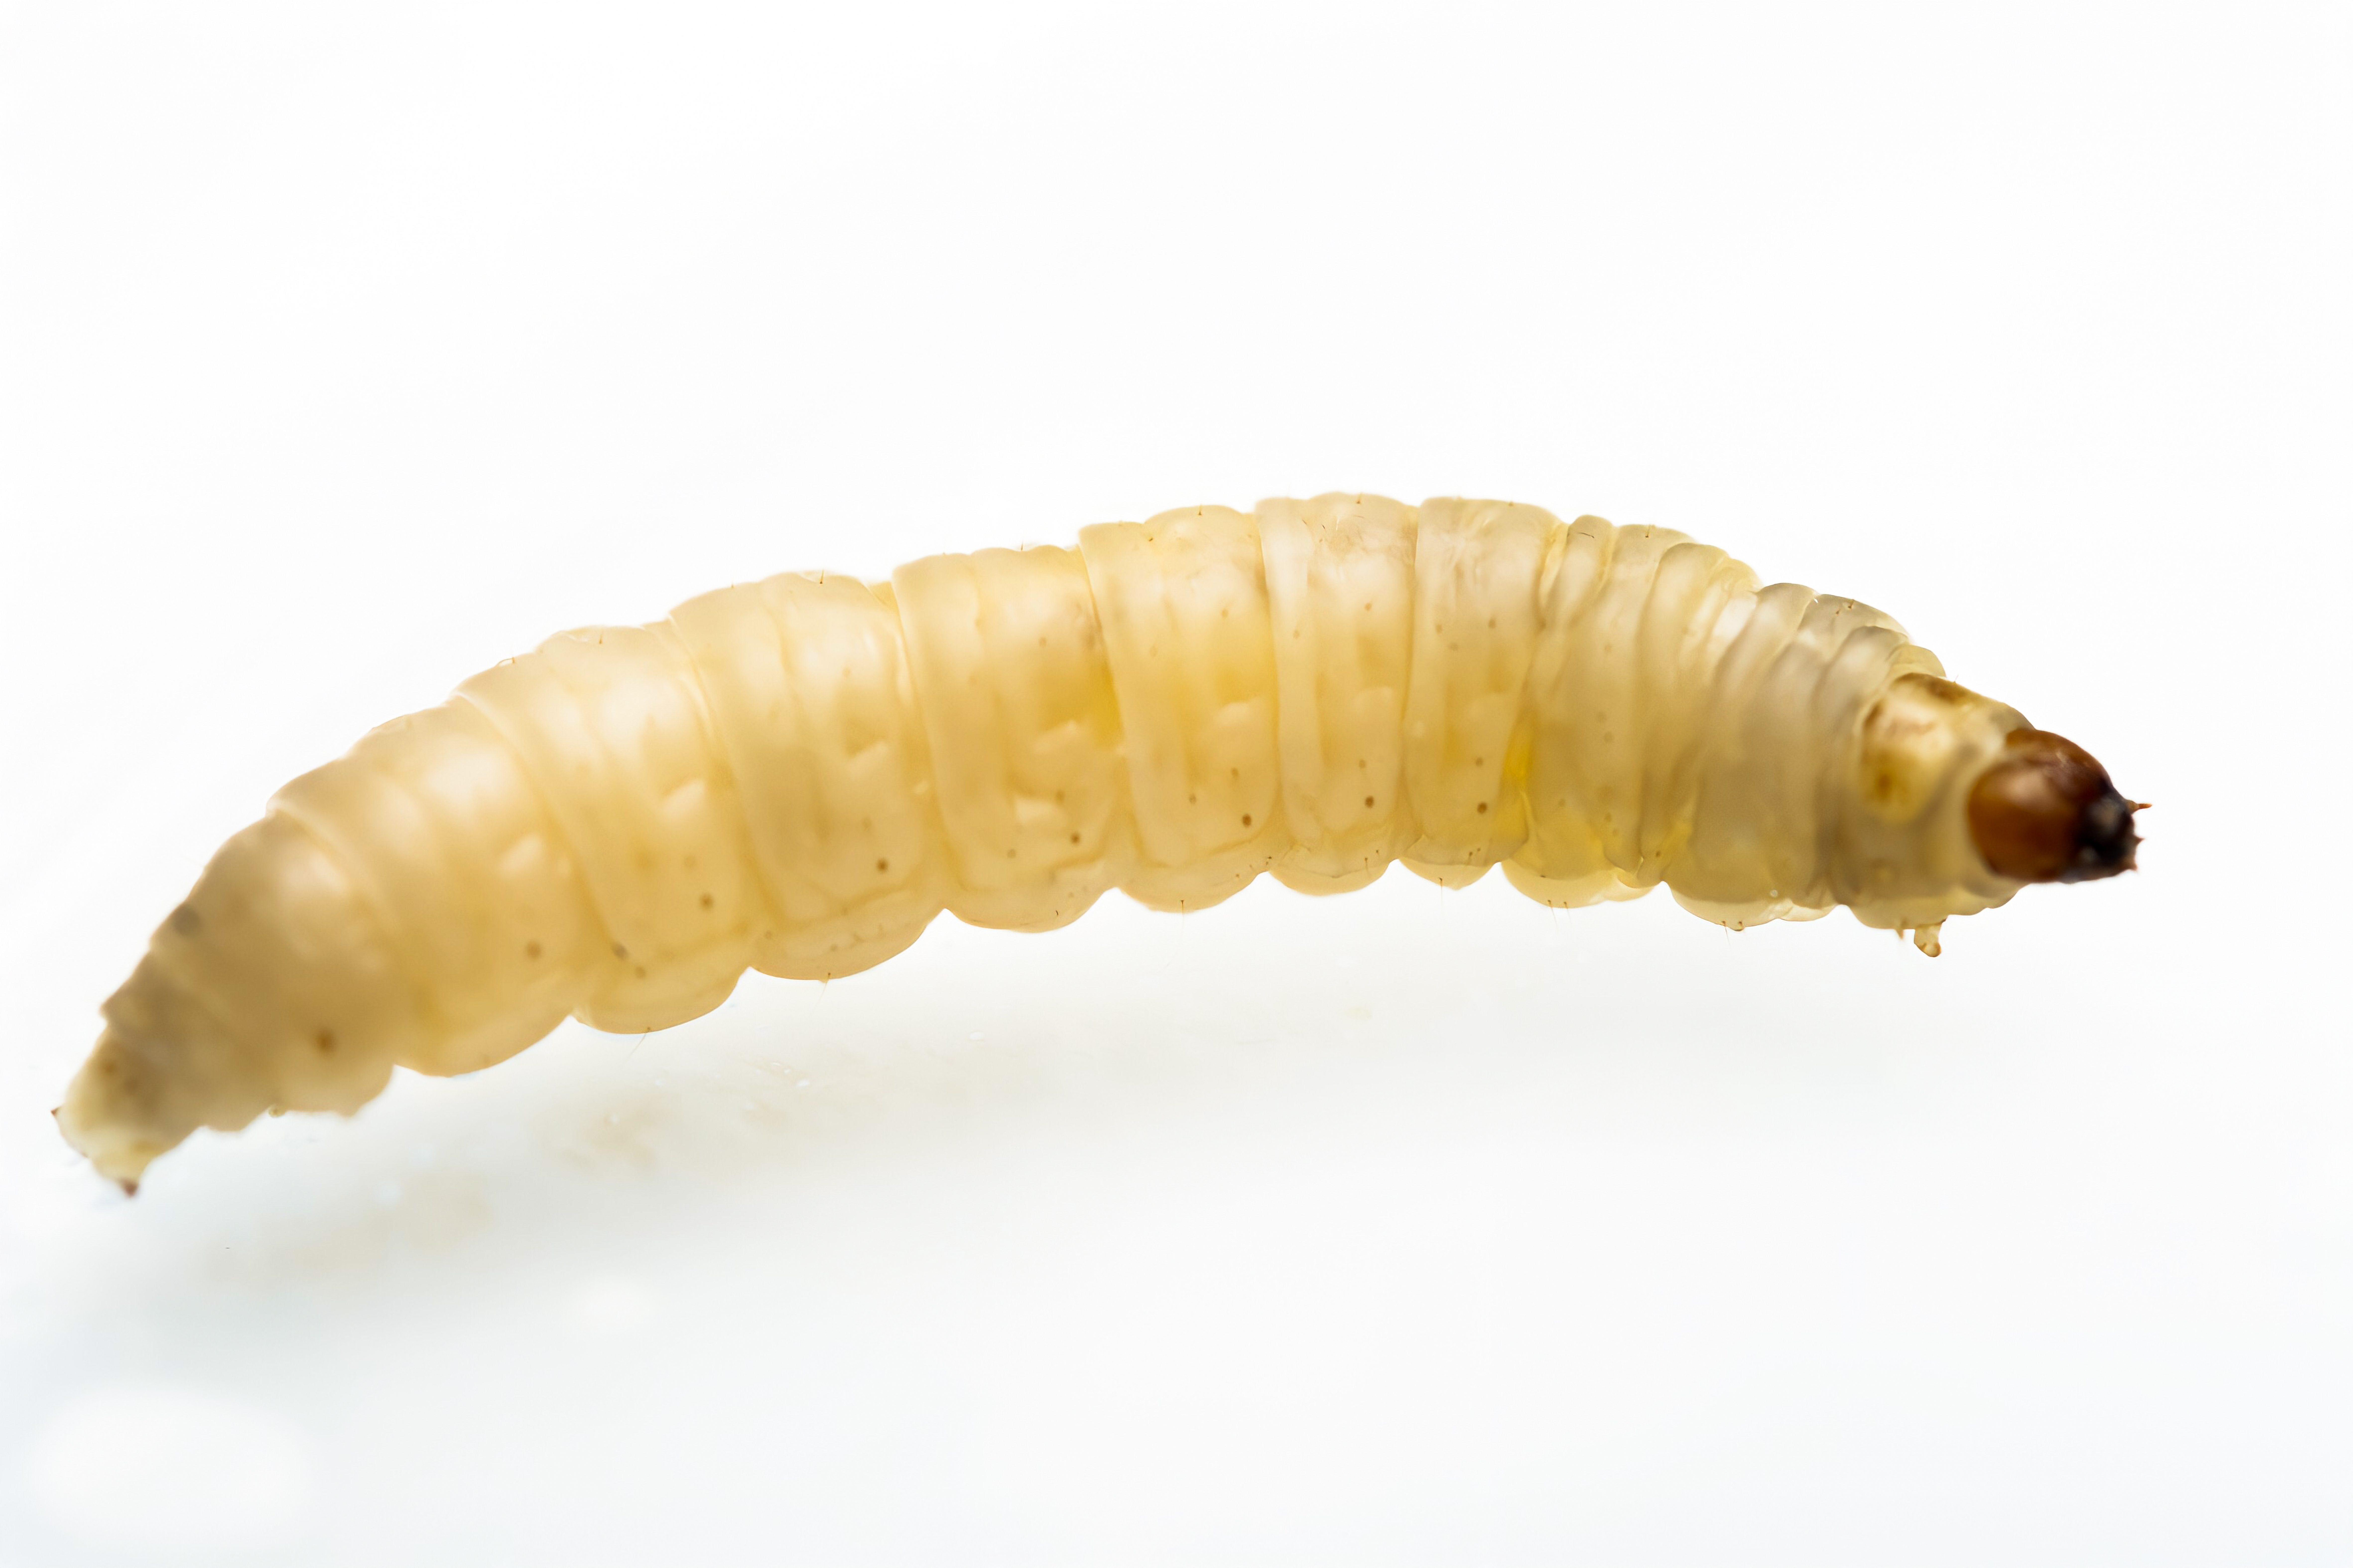 Galleria mellonella (Waxworms), Buy Now Online